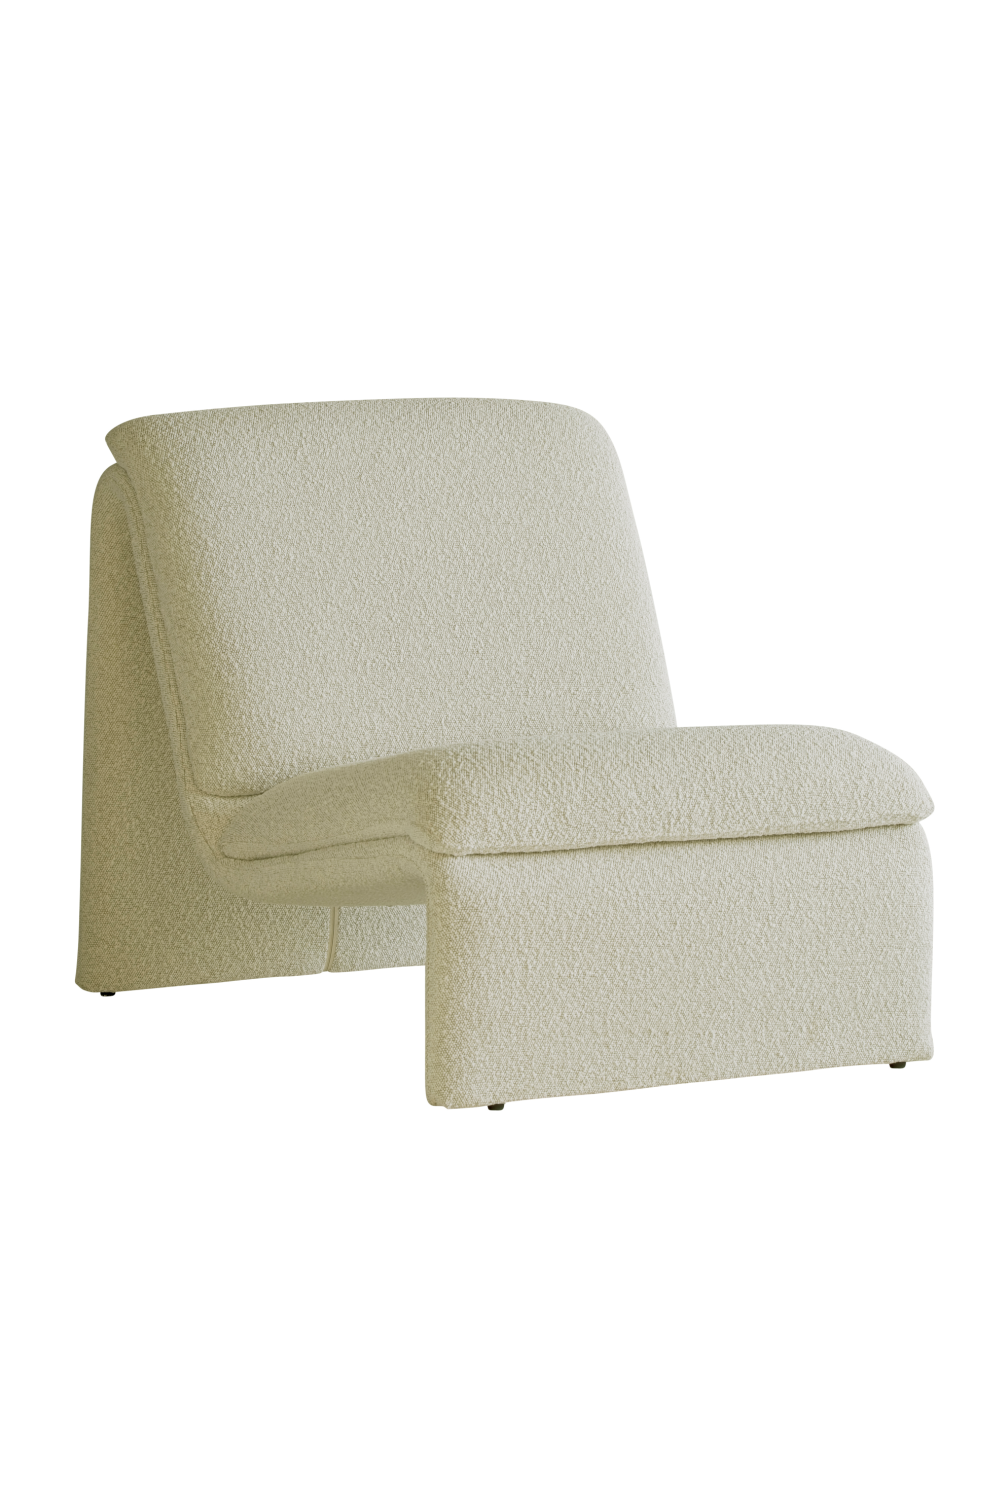 Off-White Bouclé Occasional Chair | Andrew Martin Diana | Oroa.com